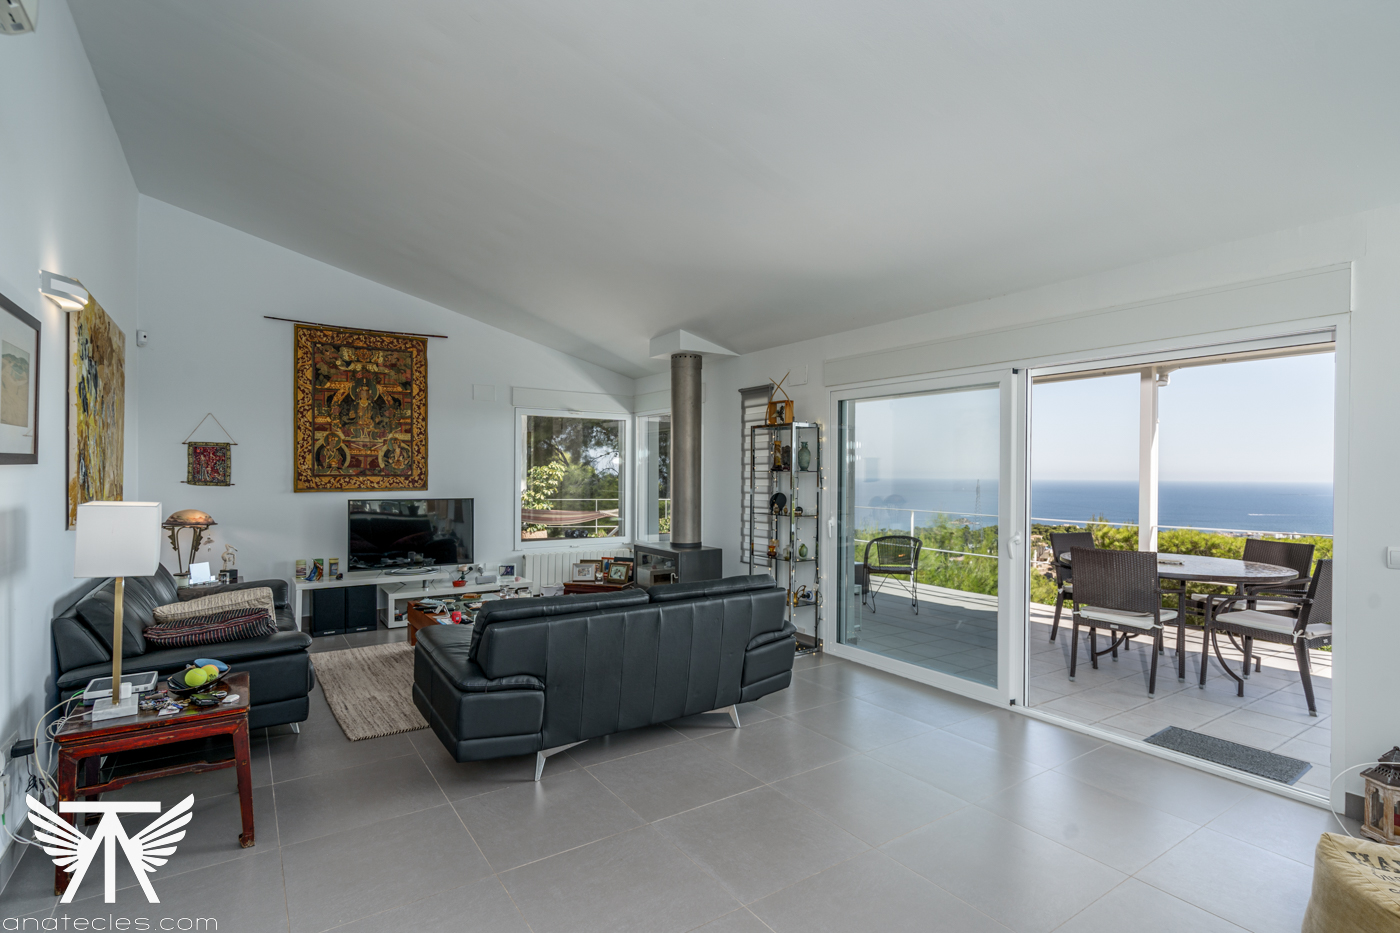 Продажа: Вилла у моря с панорамным видом - дом вашей мечты!